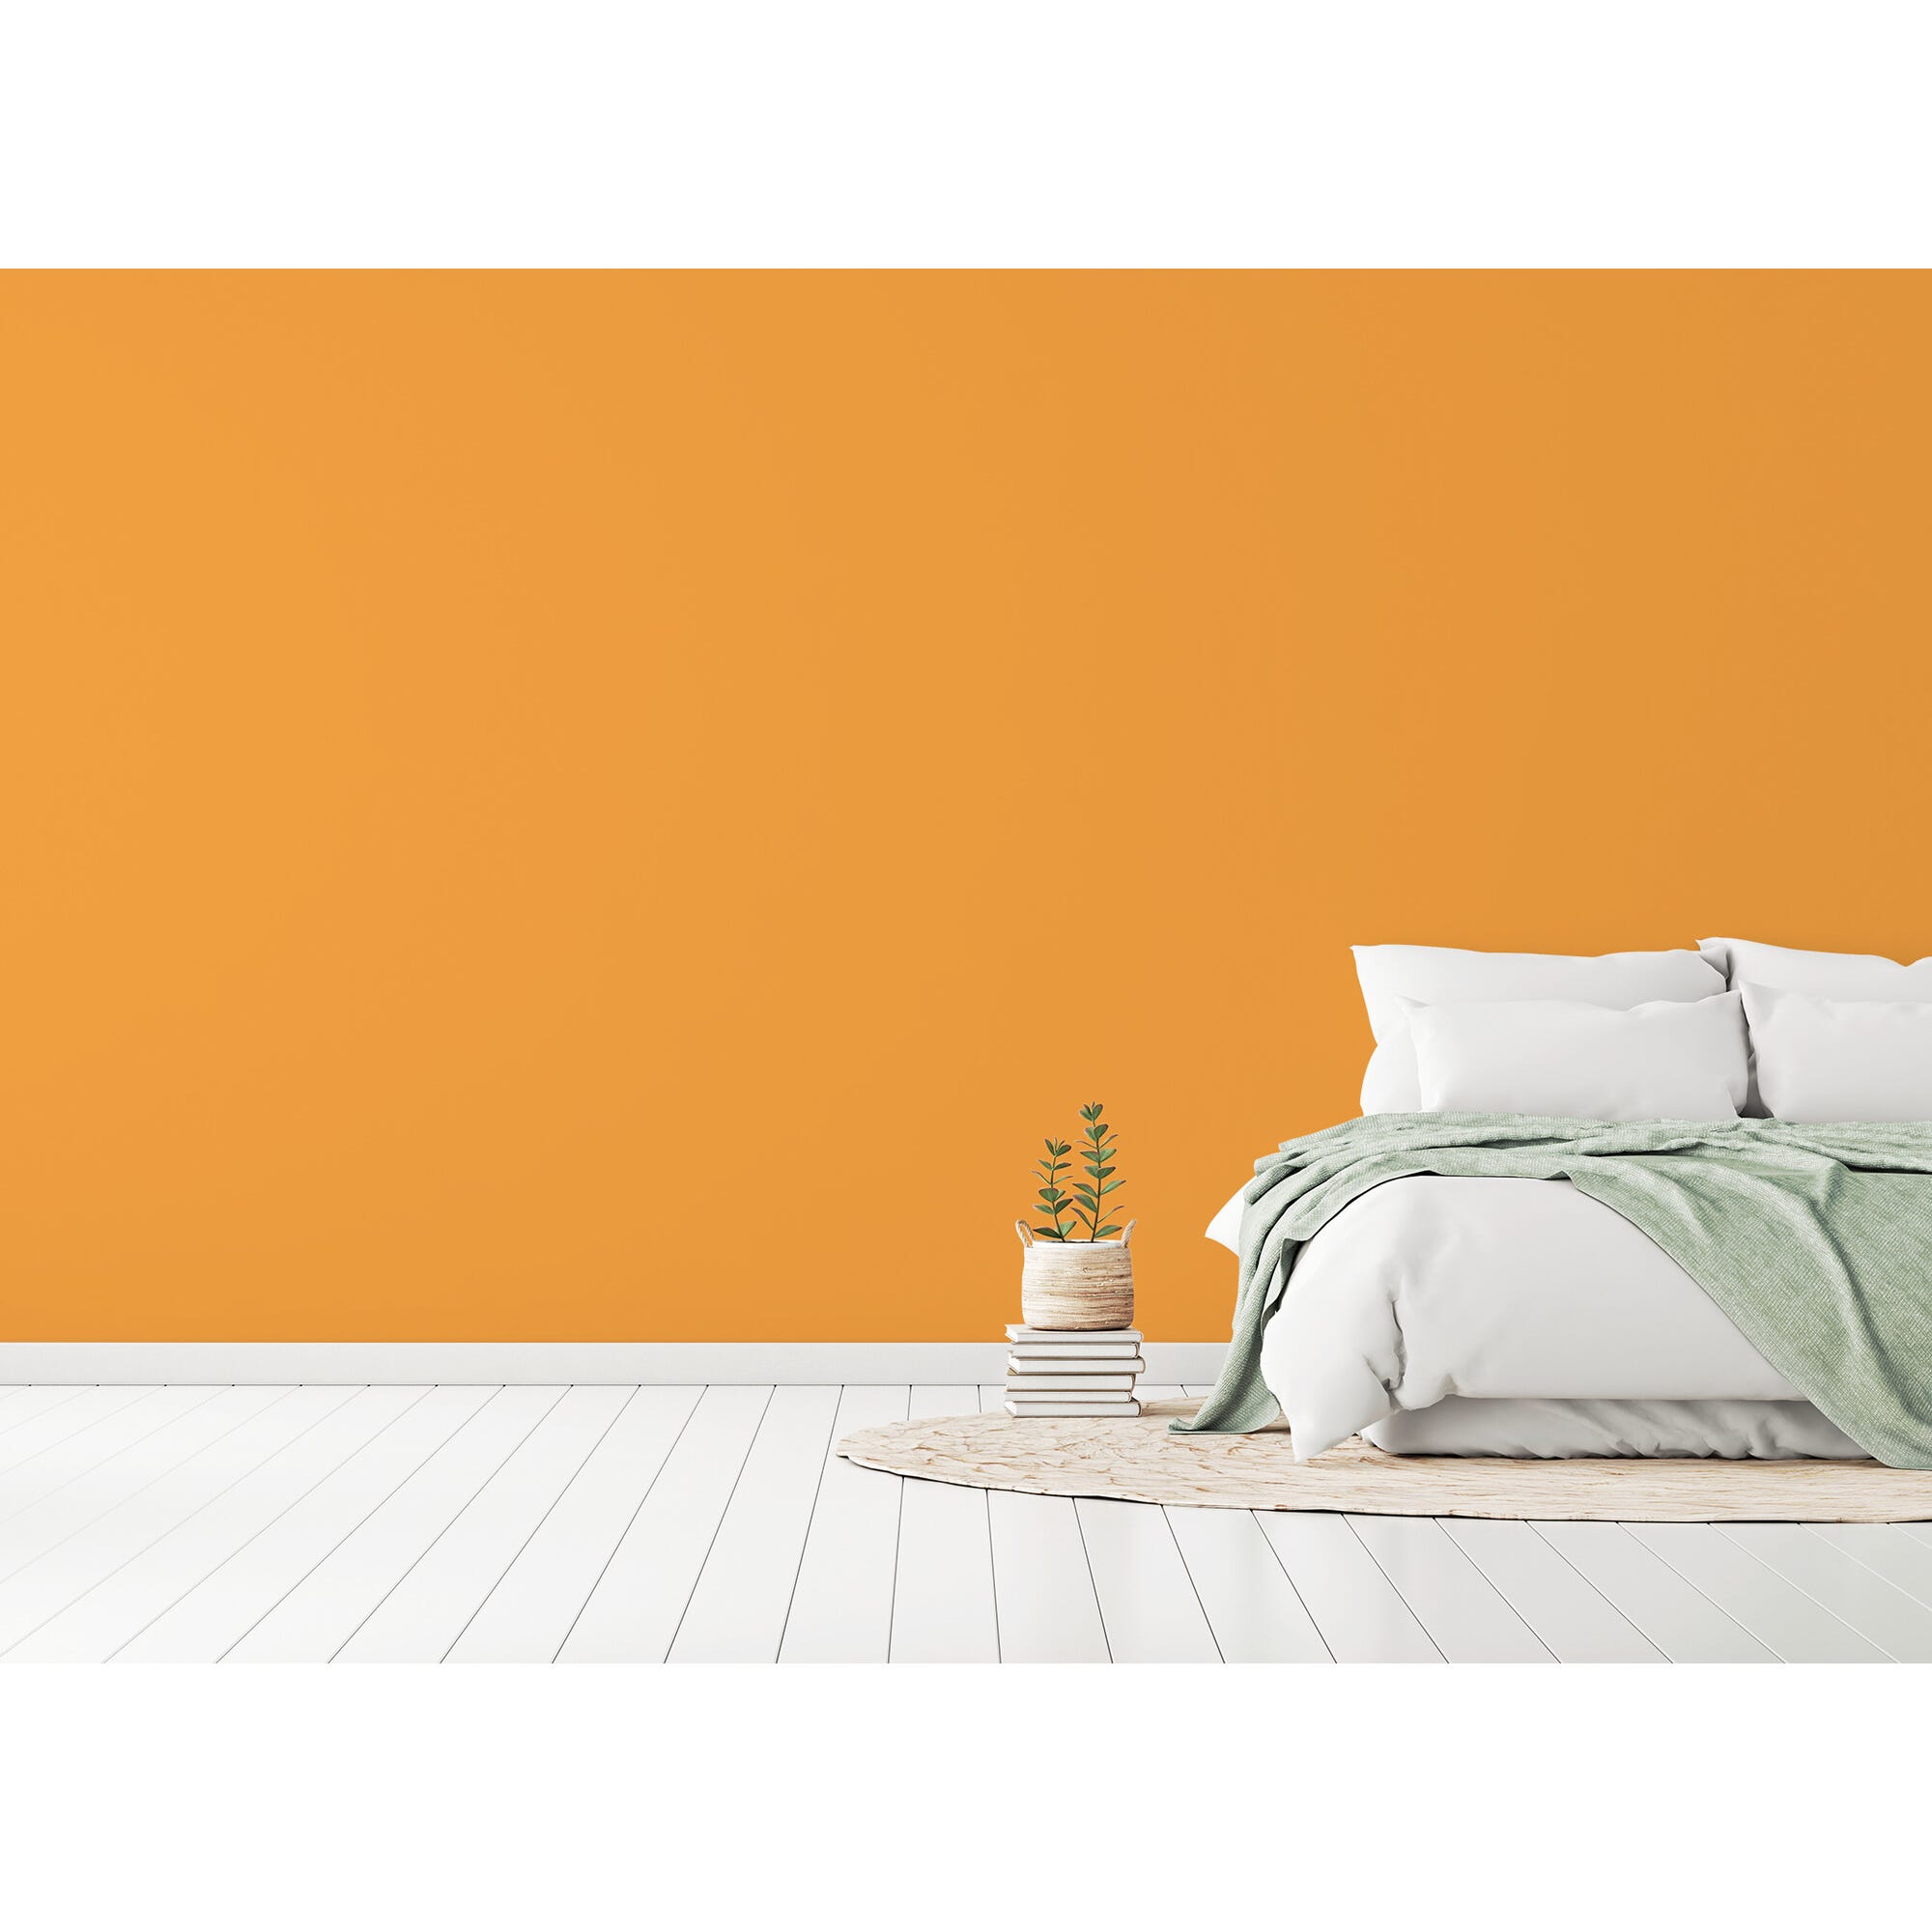 Peinture intérieure velours orange chayotte teintée en machine 3 L Altea - GAUTHIER 5